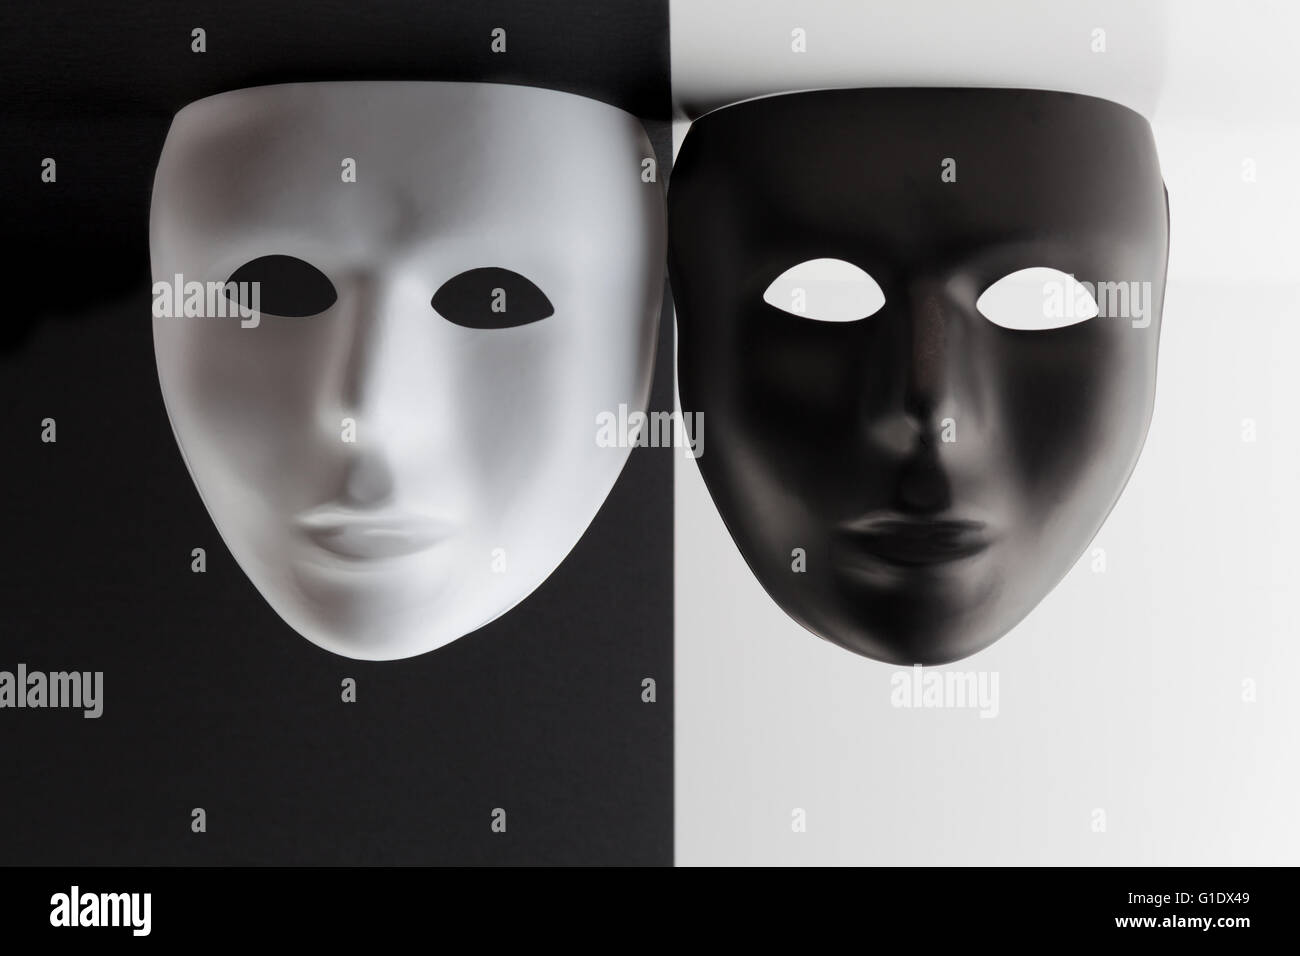 Schwarz / weiß-Masken auf kontrastierende Hintergründe von der Decke hängen. Stockfoto